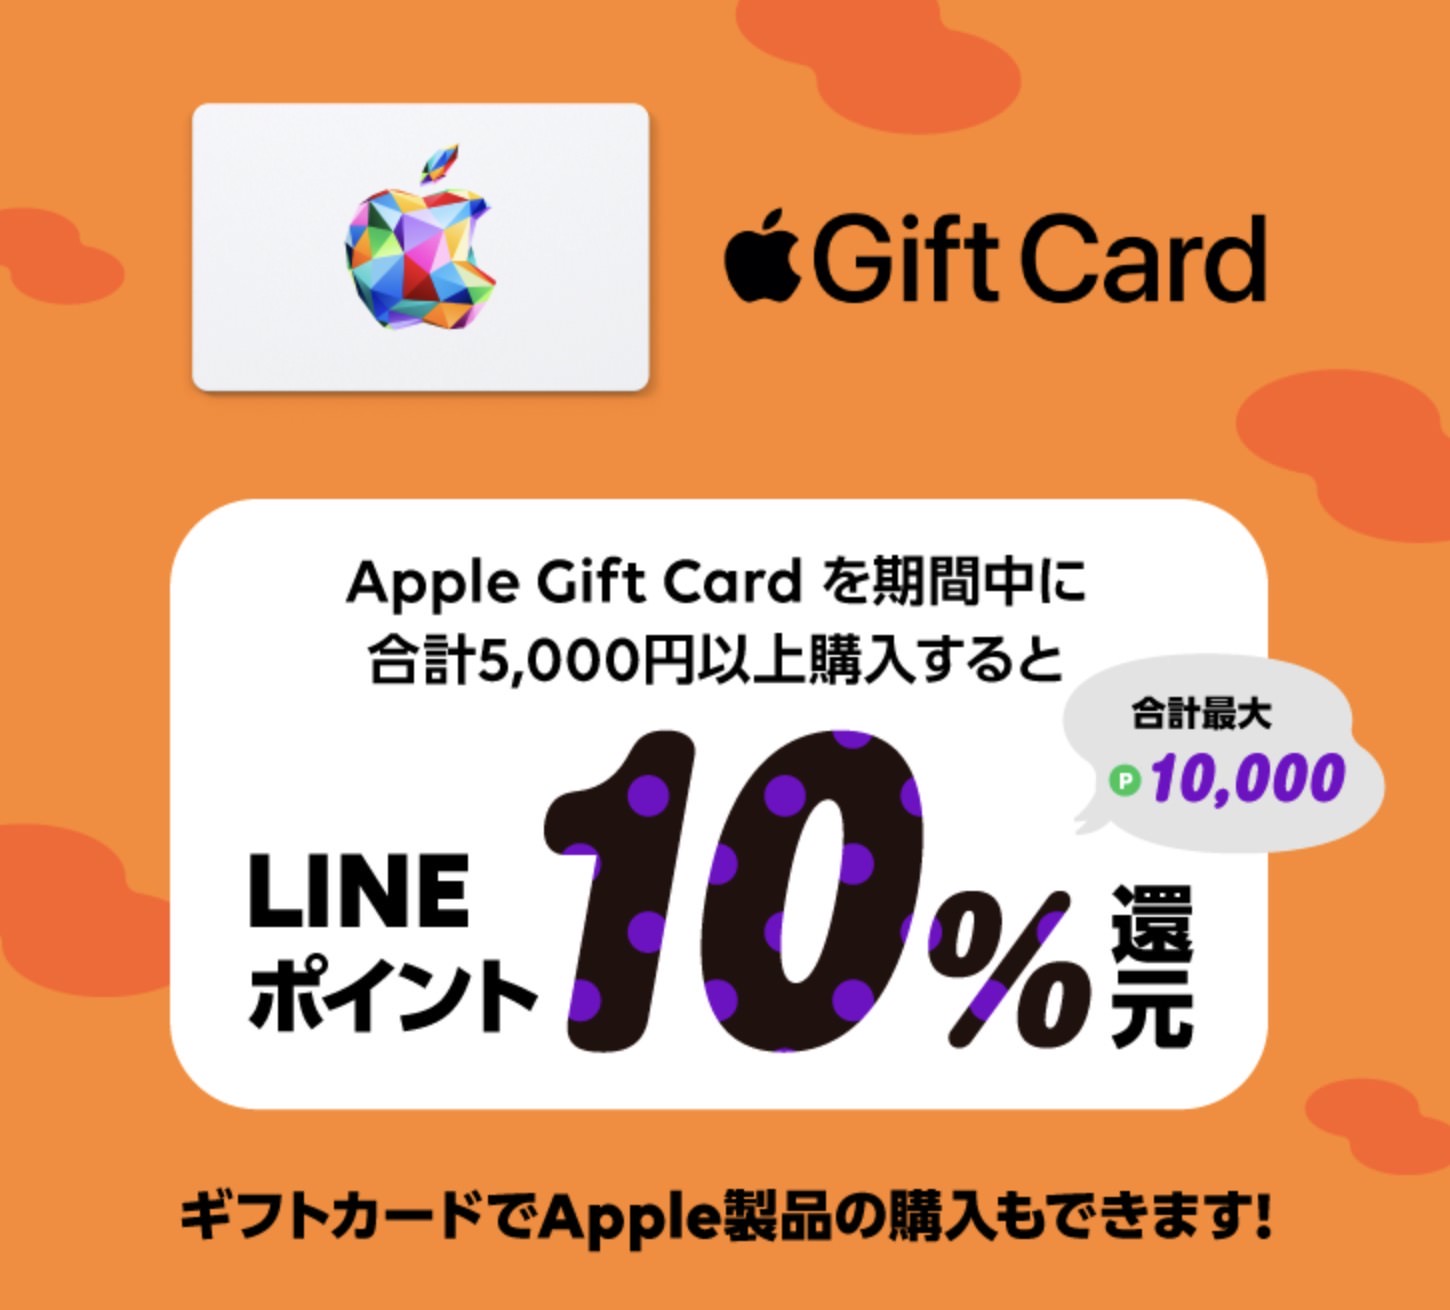 Line gift apple